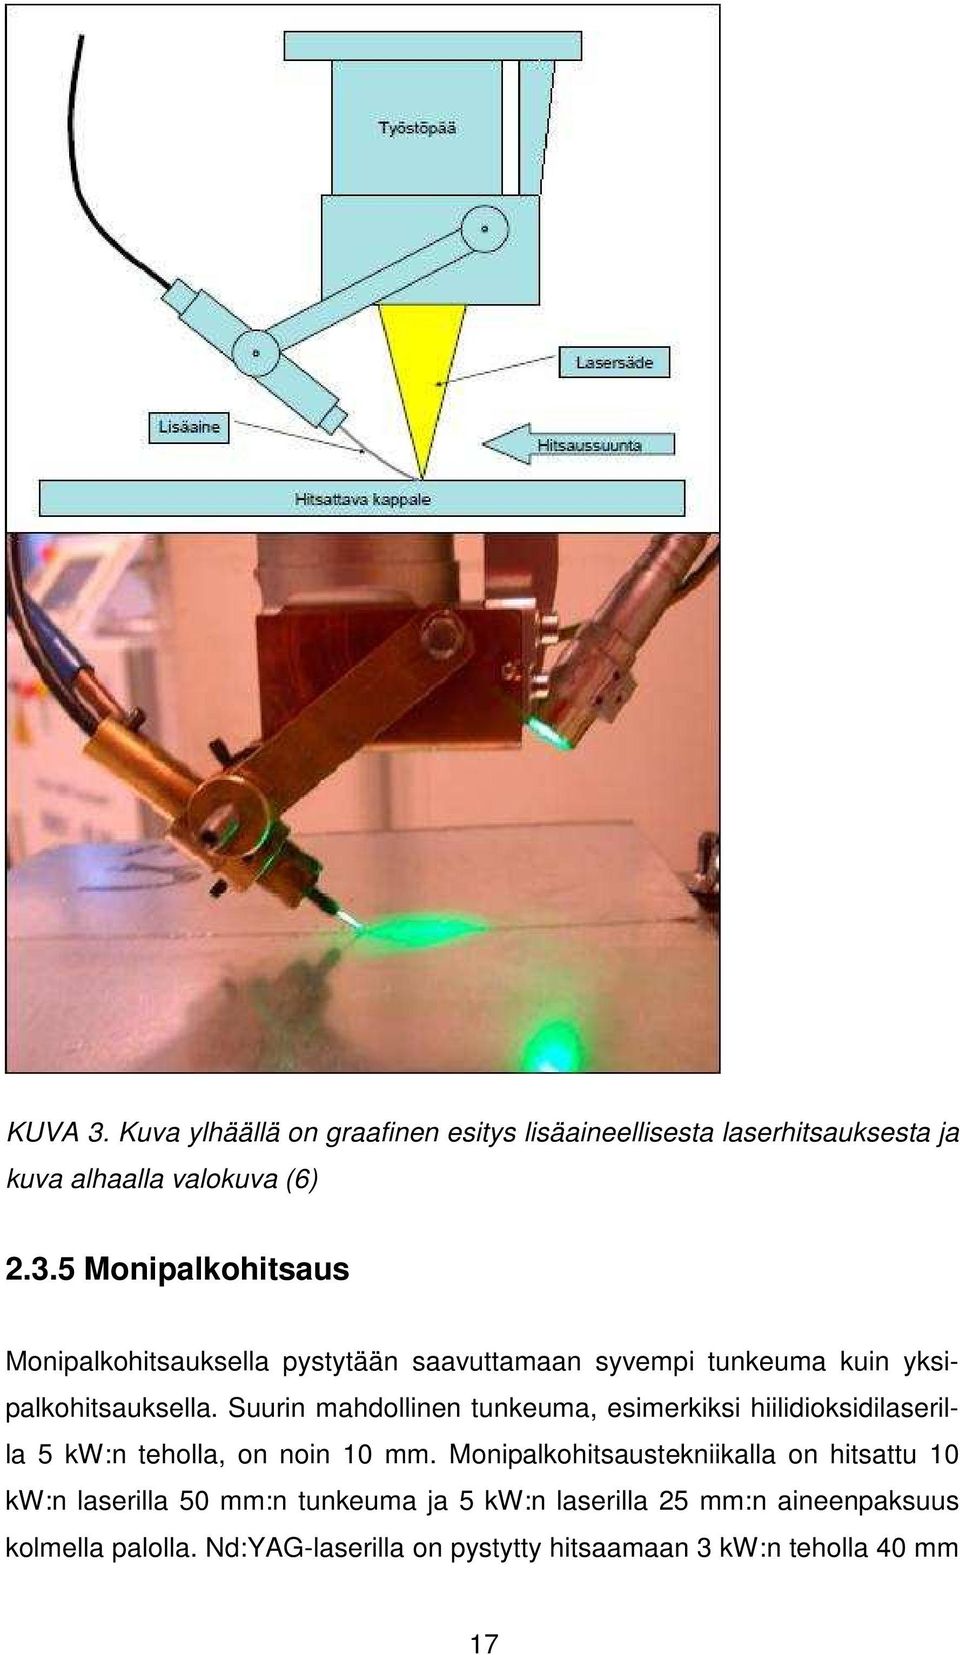 Monipalkohitsaustekniikalla on hitsattu 10 kw:n laserilla 50 mm:n tunkeuma ja 5 kw:n laserilla 25 mm:n aineenpaksuus kolmella